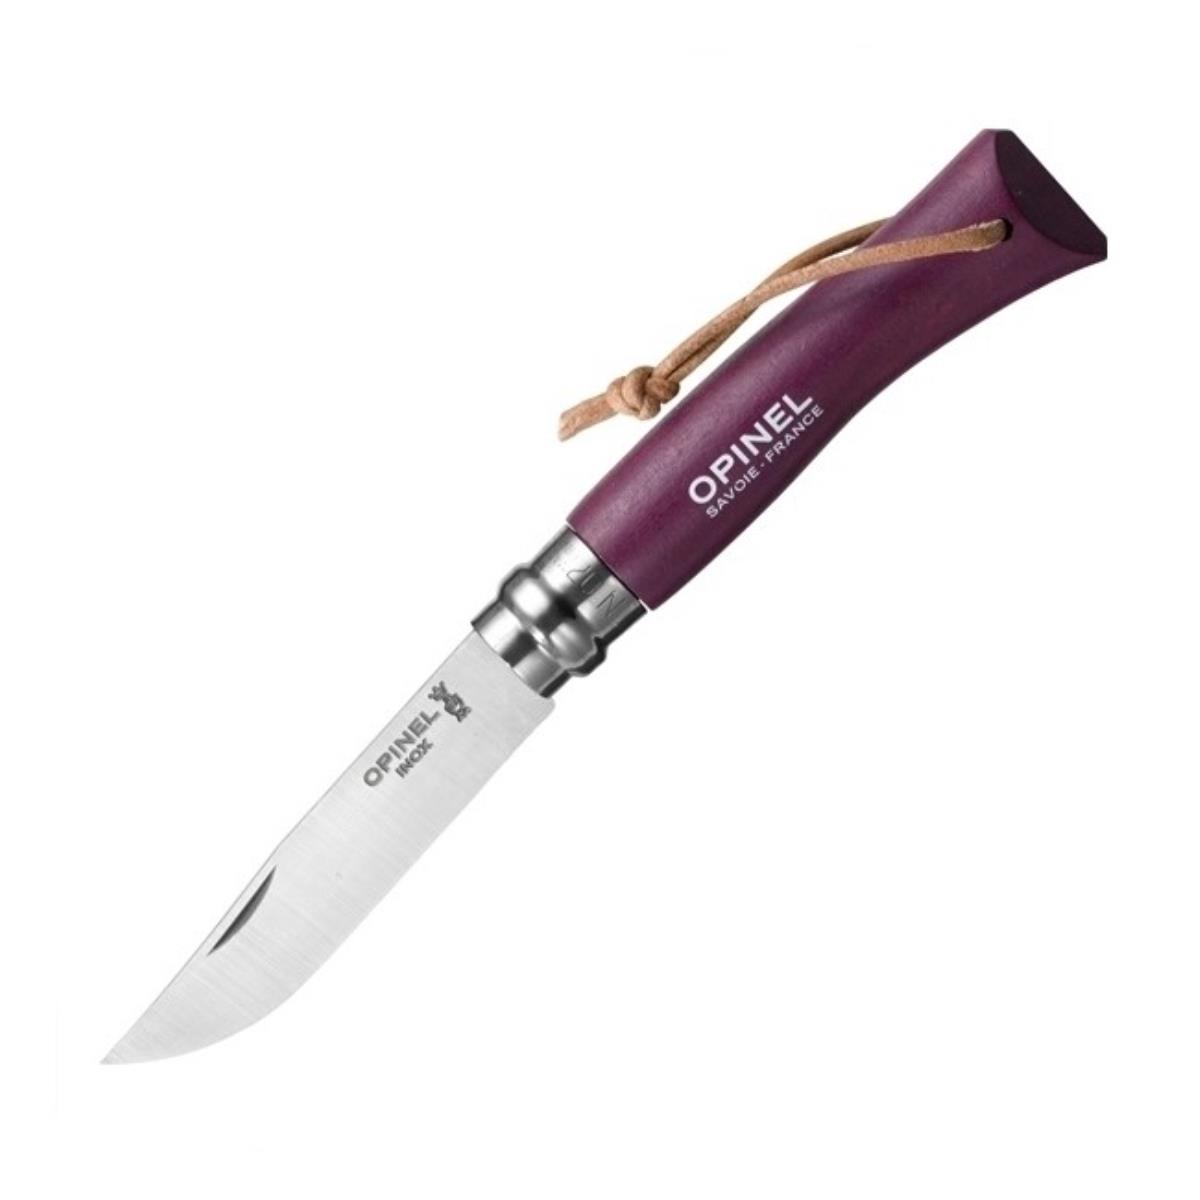 Нож №7 VRI Colored Tradition нерж. сталь, рукоять граб,  клинок 8см, темляк (слива) OPINEL нож разделочный ирбис цм граб аир